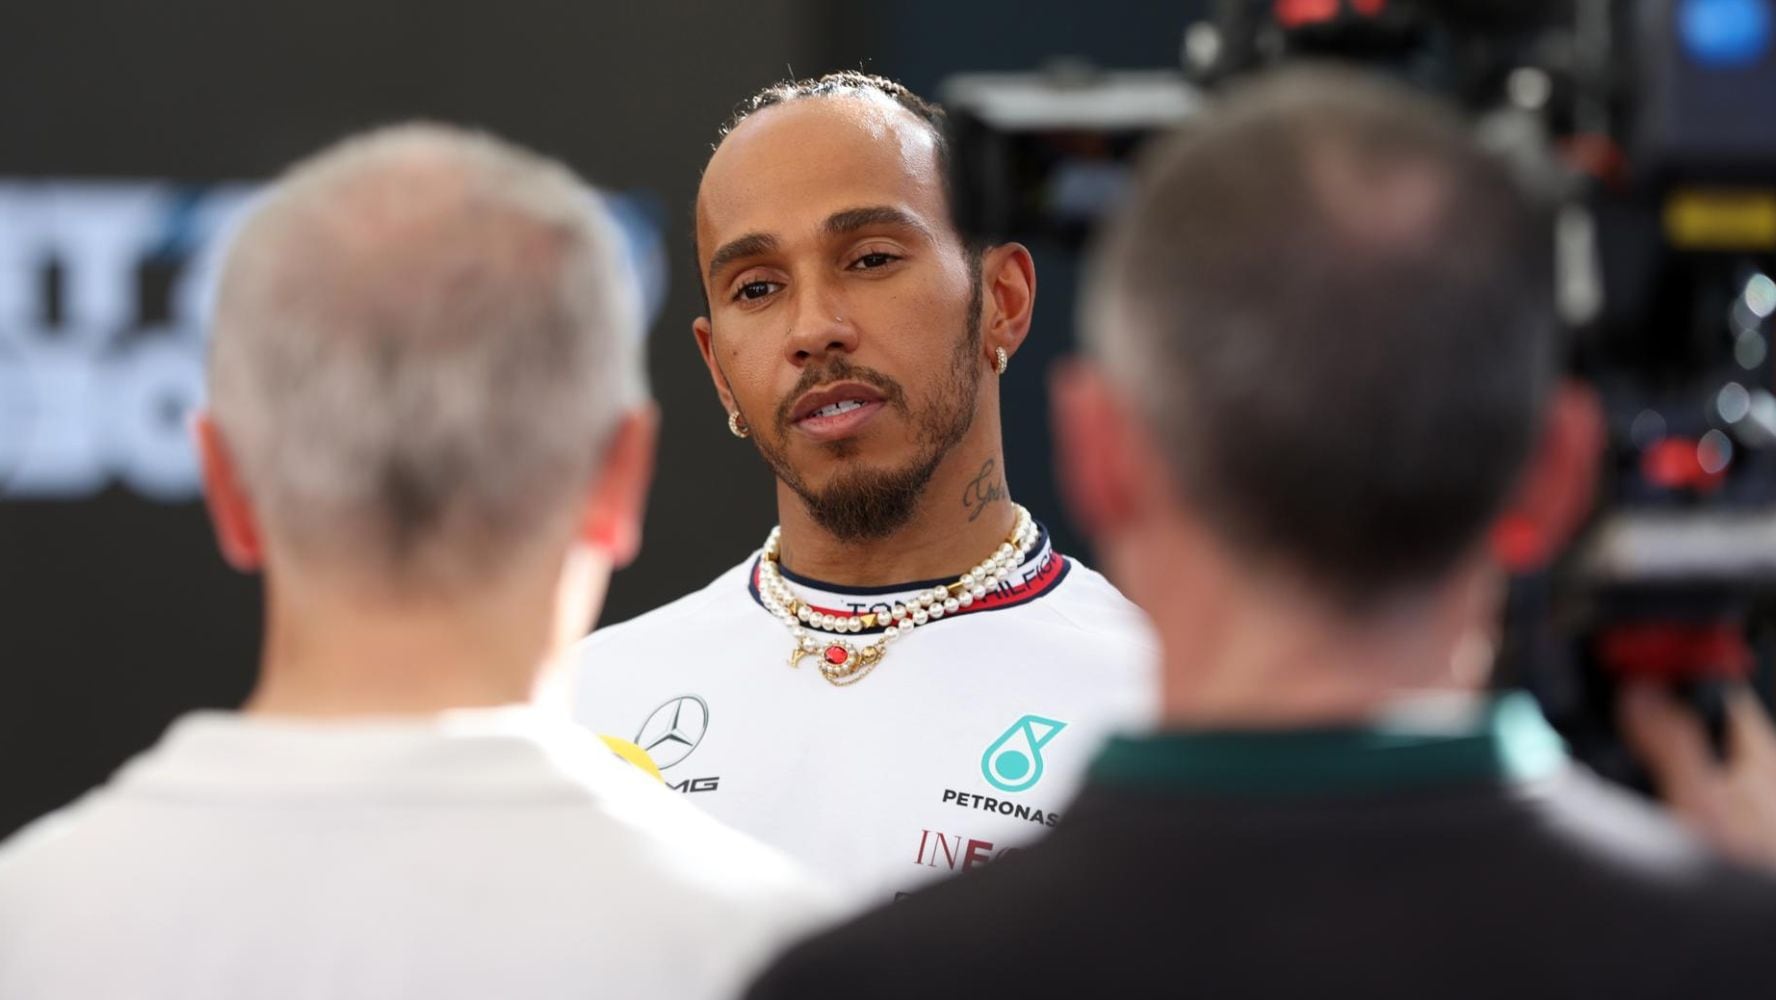 Lewis Hamilton es el piloto con la mayor fortuna de la actual parrilla de F1. (Foto: EFE)